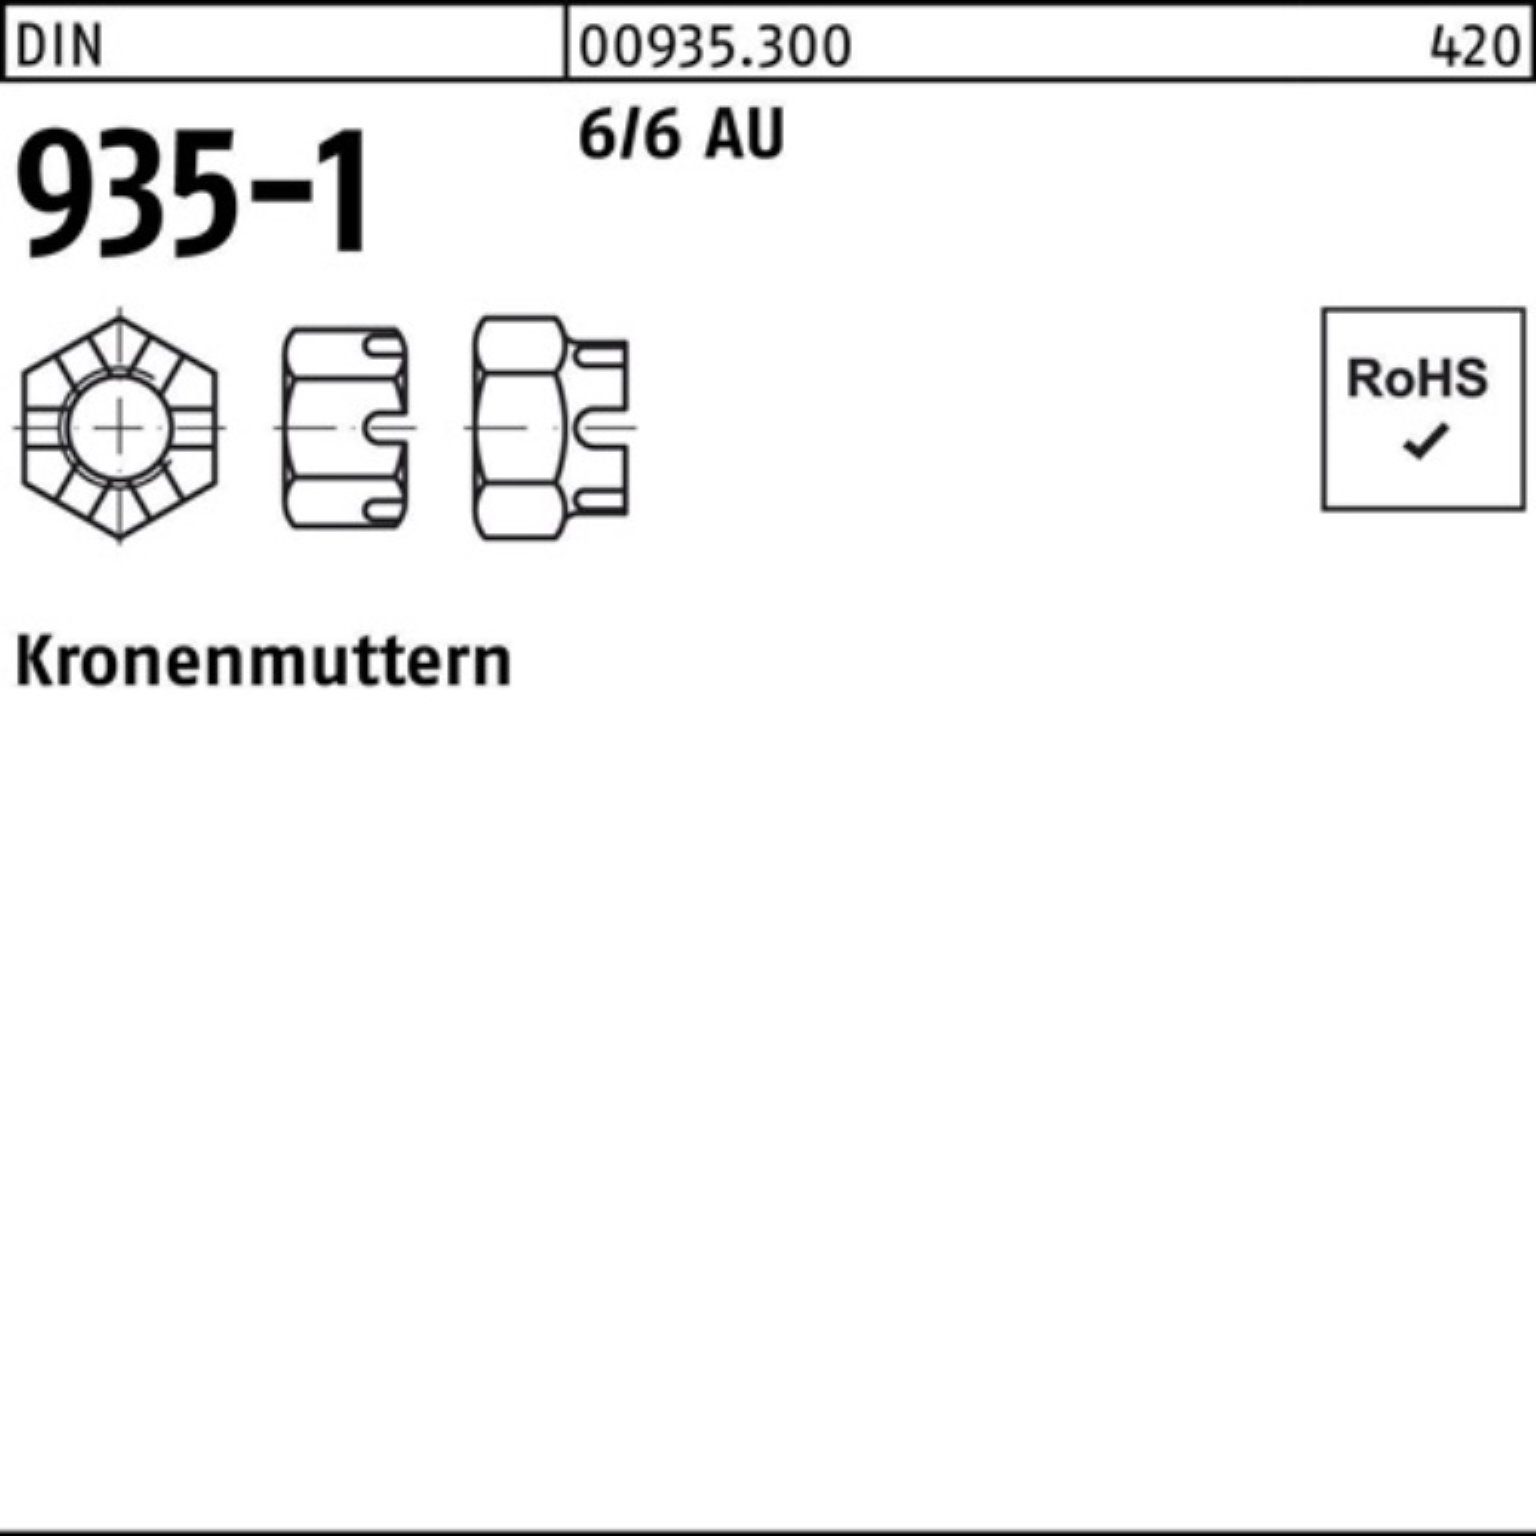 Reyher Kronenmutter 100er 6/6 Automatenstahl Stück 1 Pack 935-1 DIN Kronenmutter DIN M45